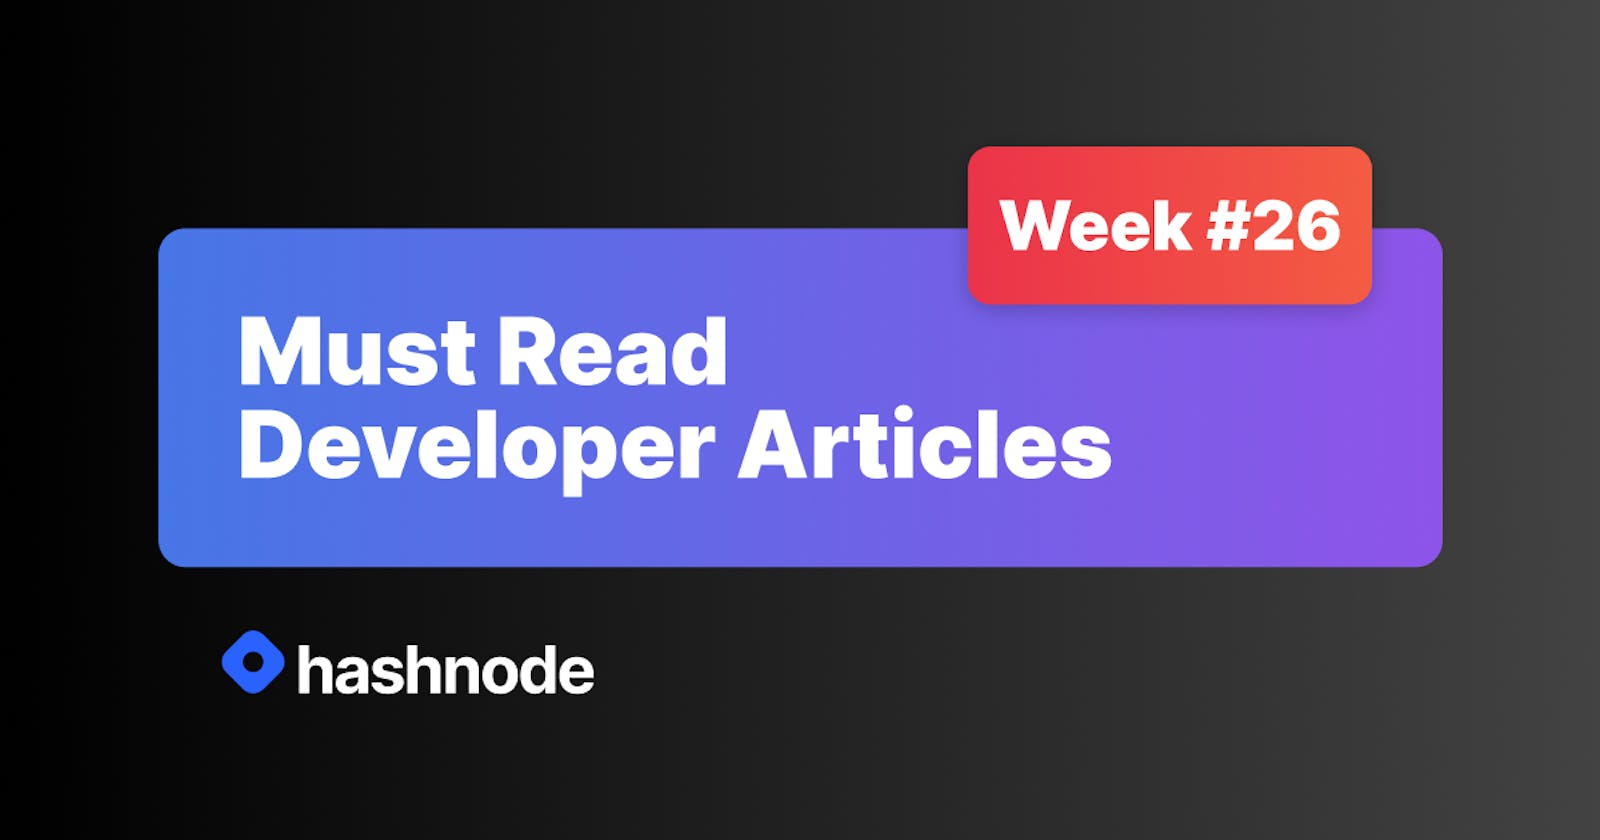 Must Read Developer Articles on Hashnode - #26